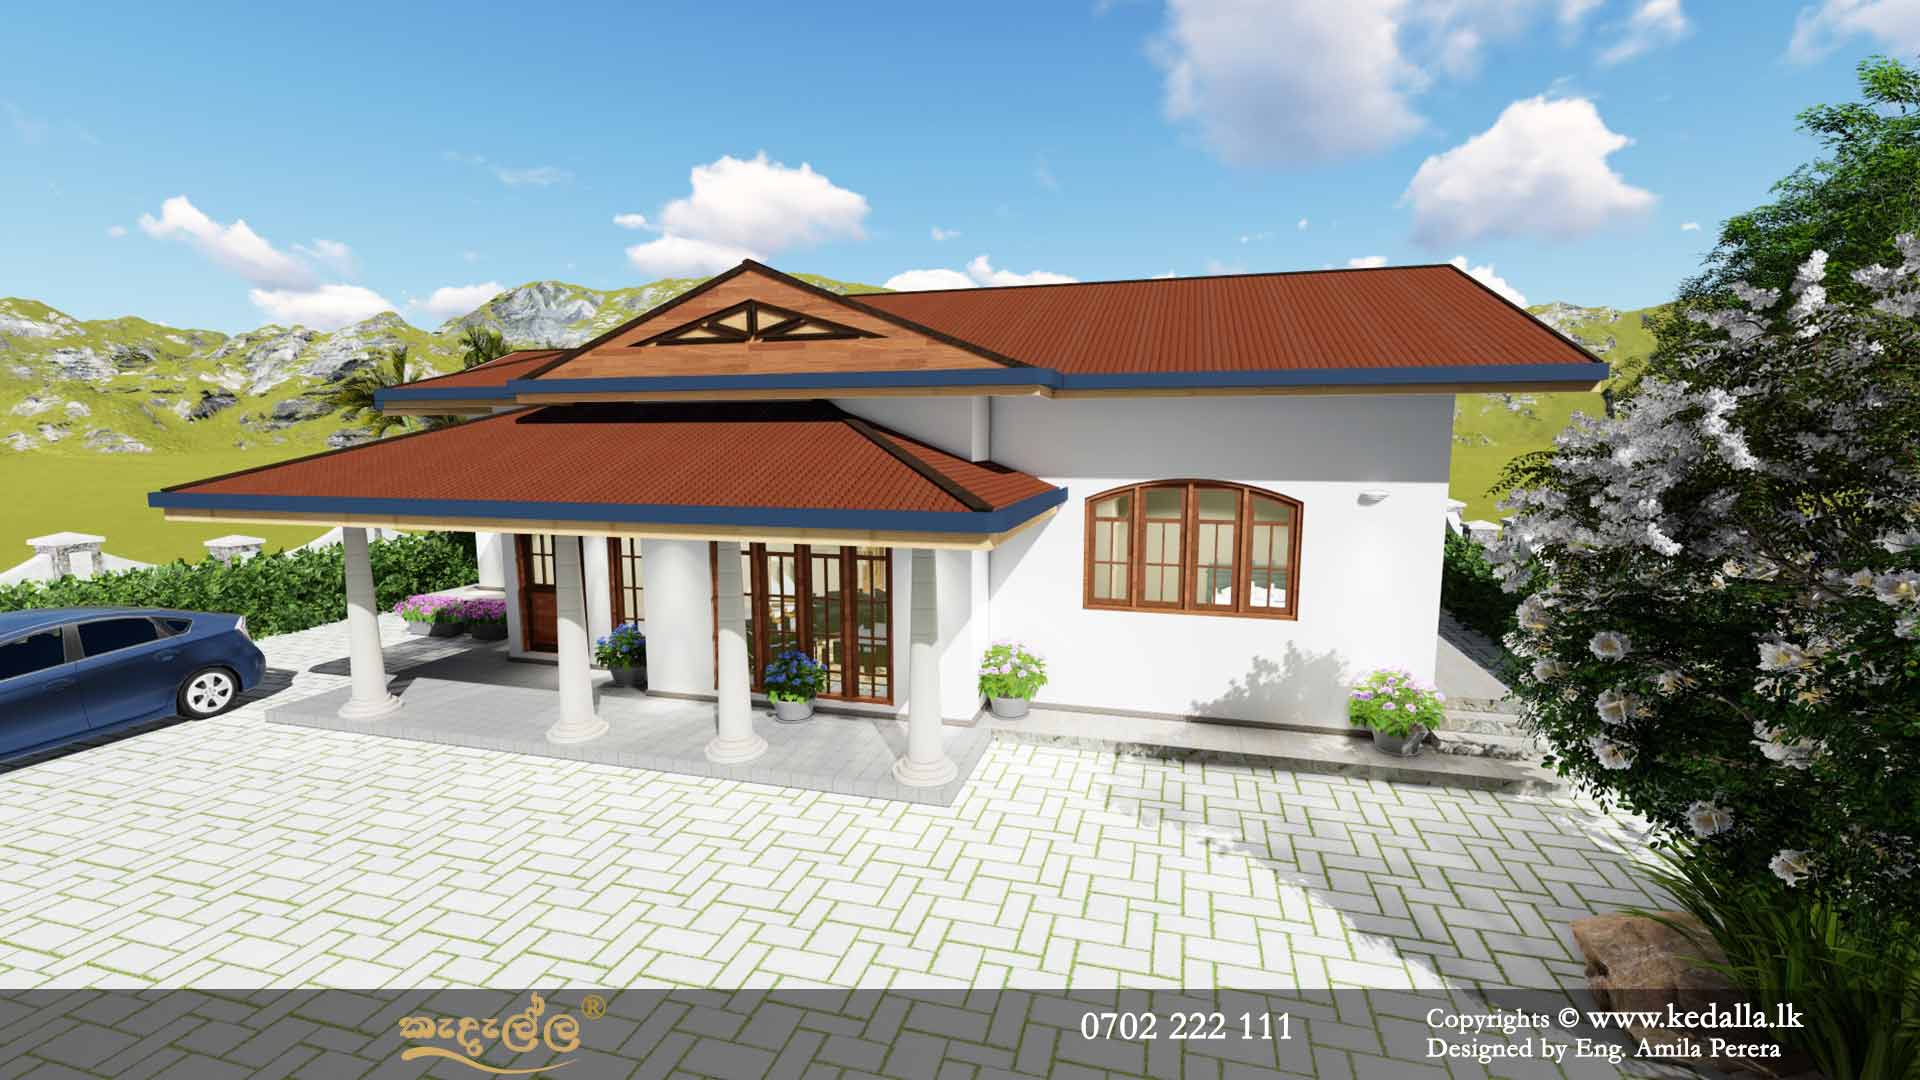 Single Story House Plan Designed by Architects in kandy Sri Lanka